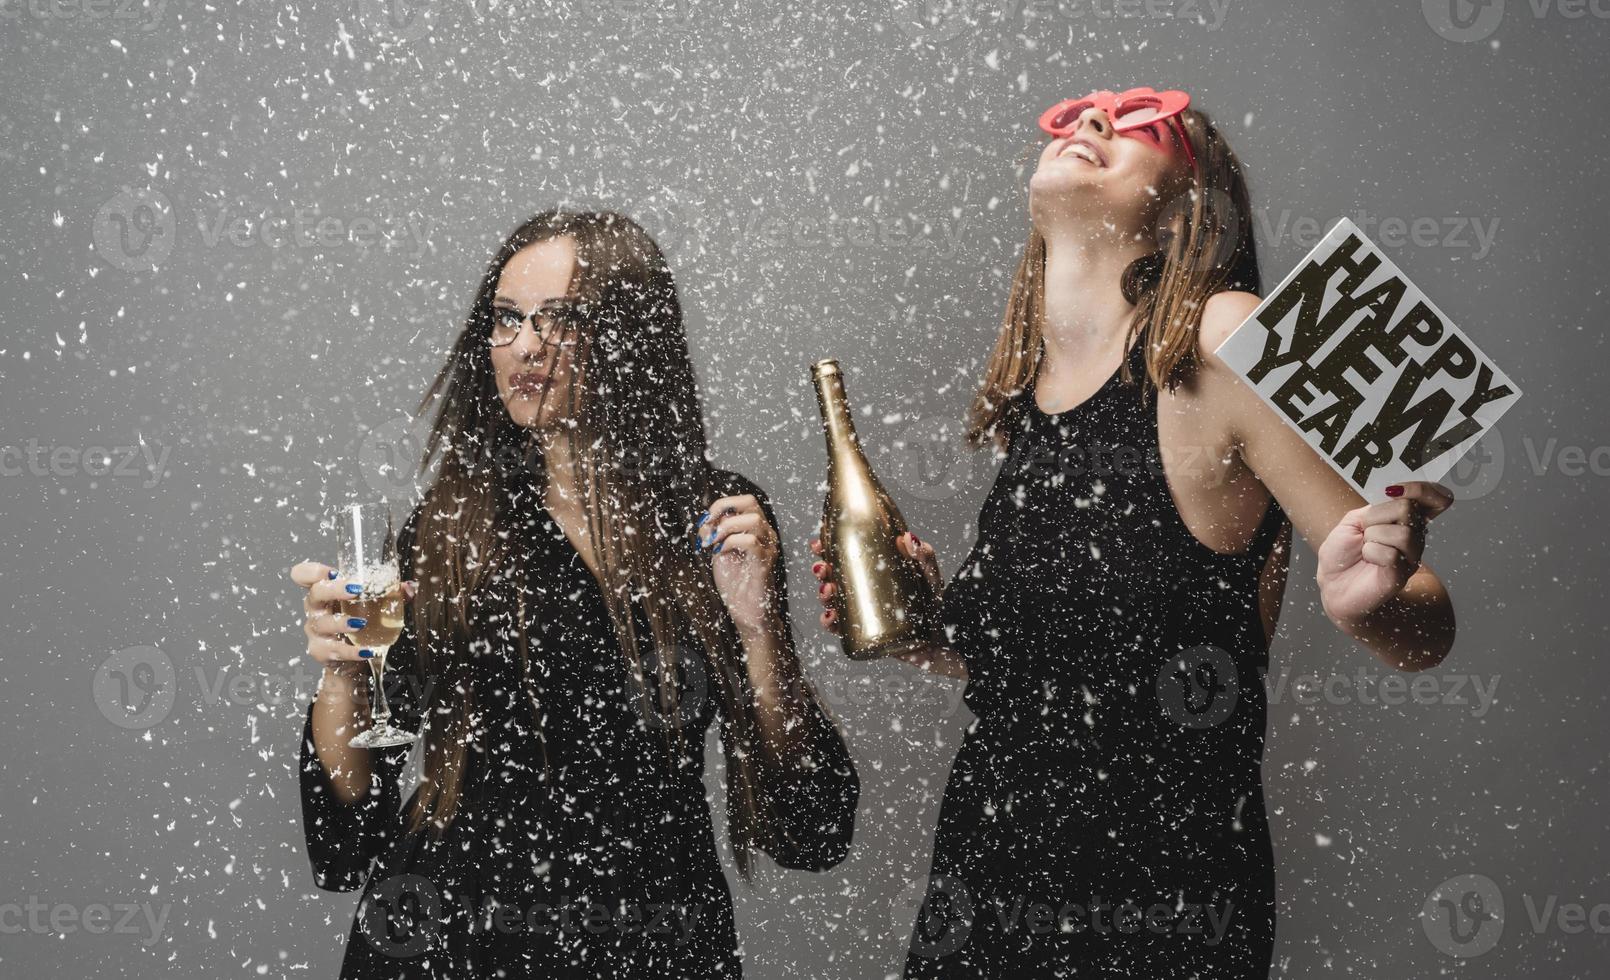 zwei freundinnen feiern neujahr mit konfetti und champagner mit schild. isoliert foto